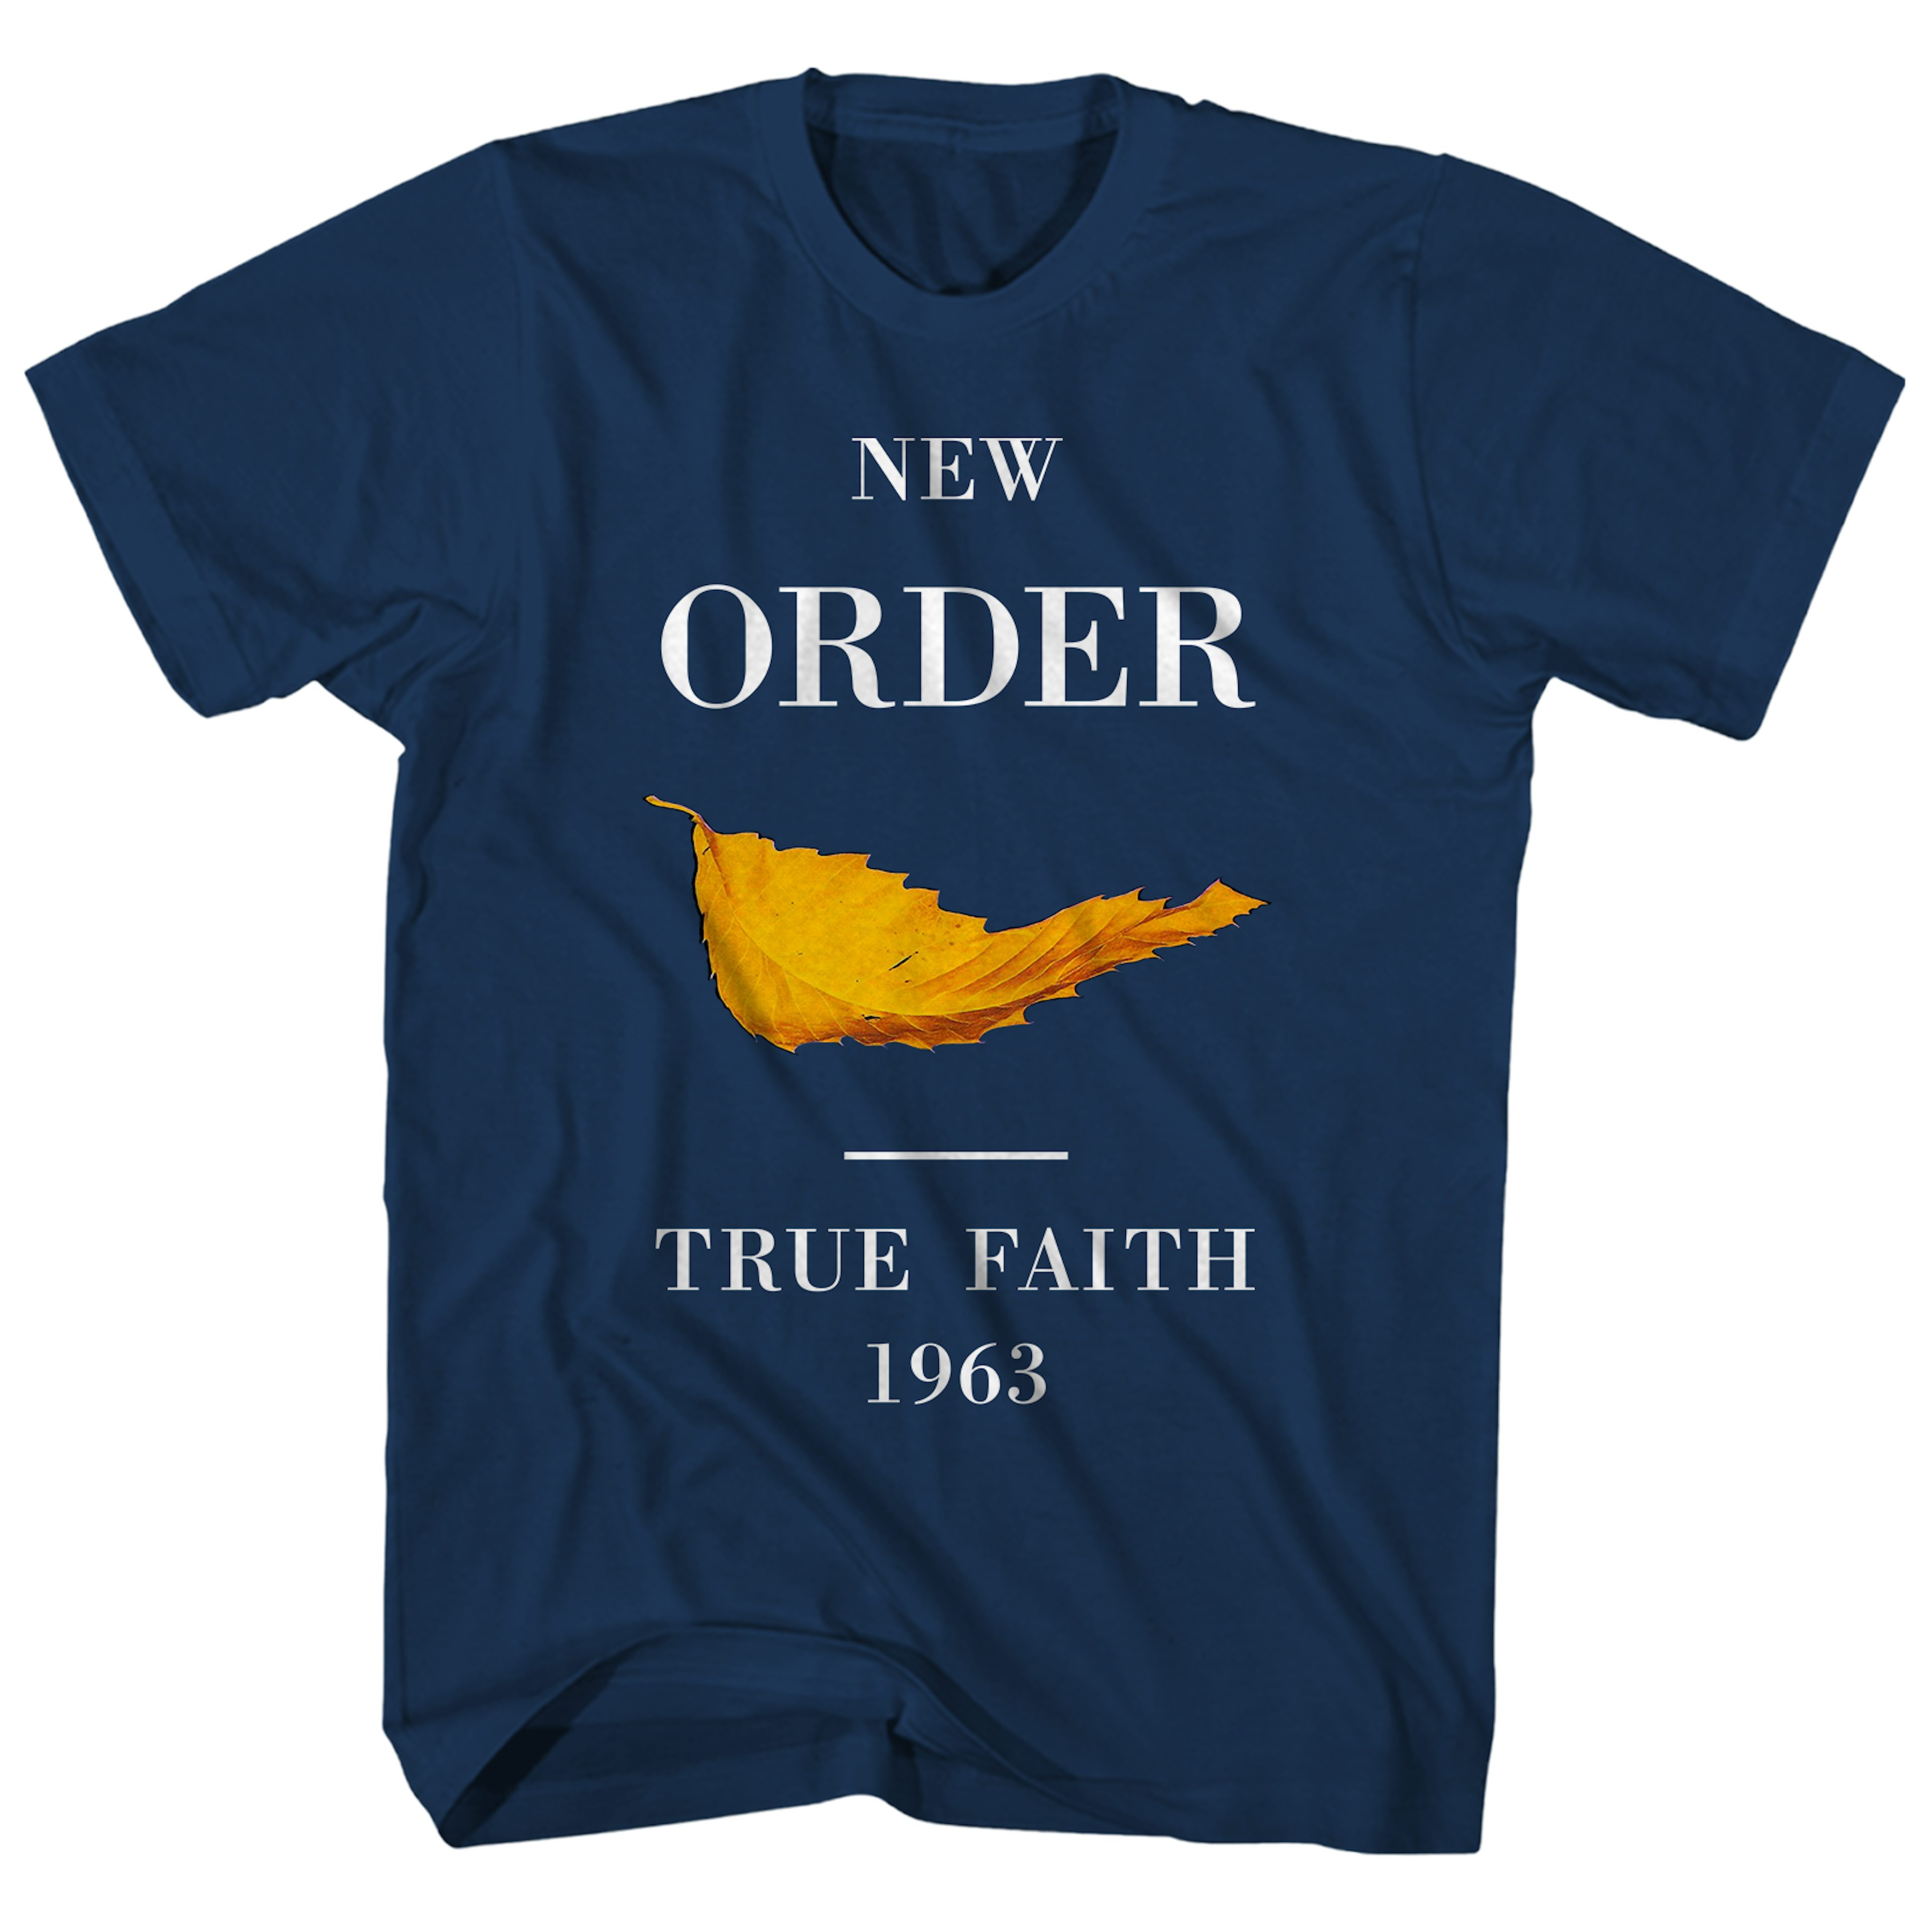 True faith new